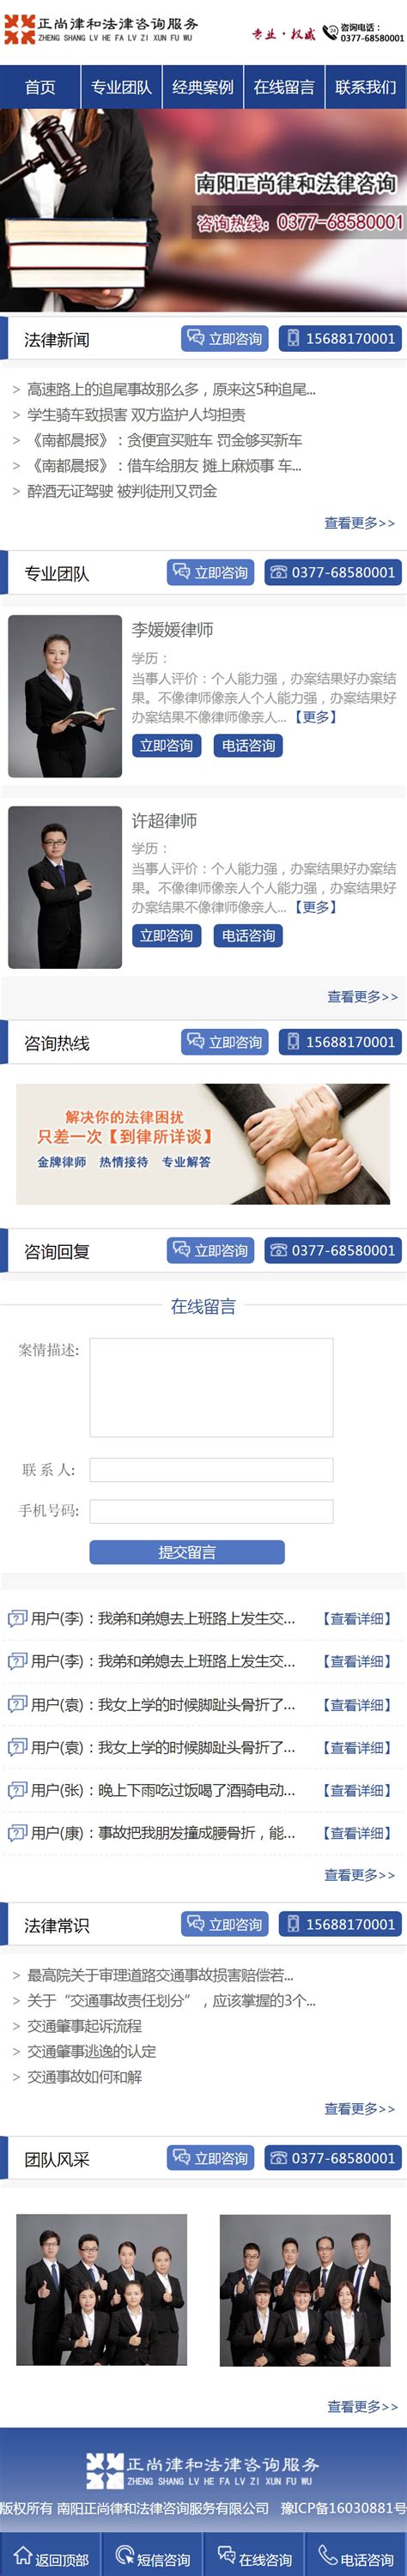 技术方案_郑州网站推广_微信公众号开发与代运营外包托管服务_野狼网络营销